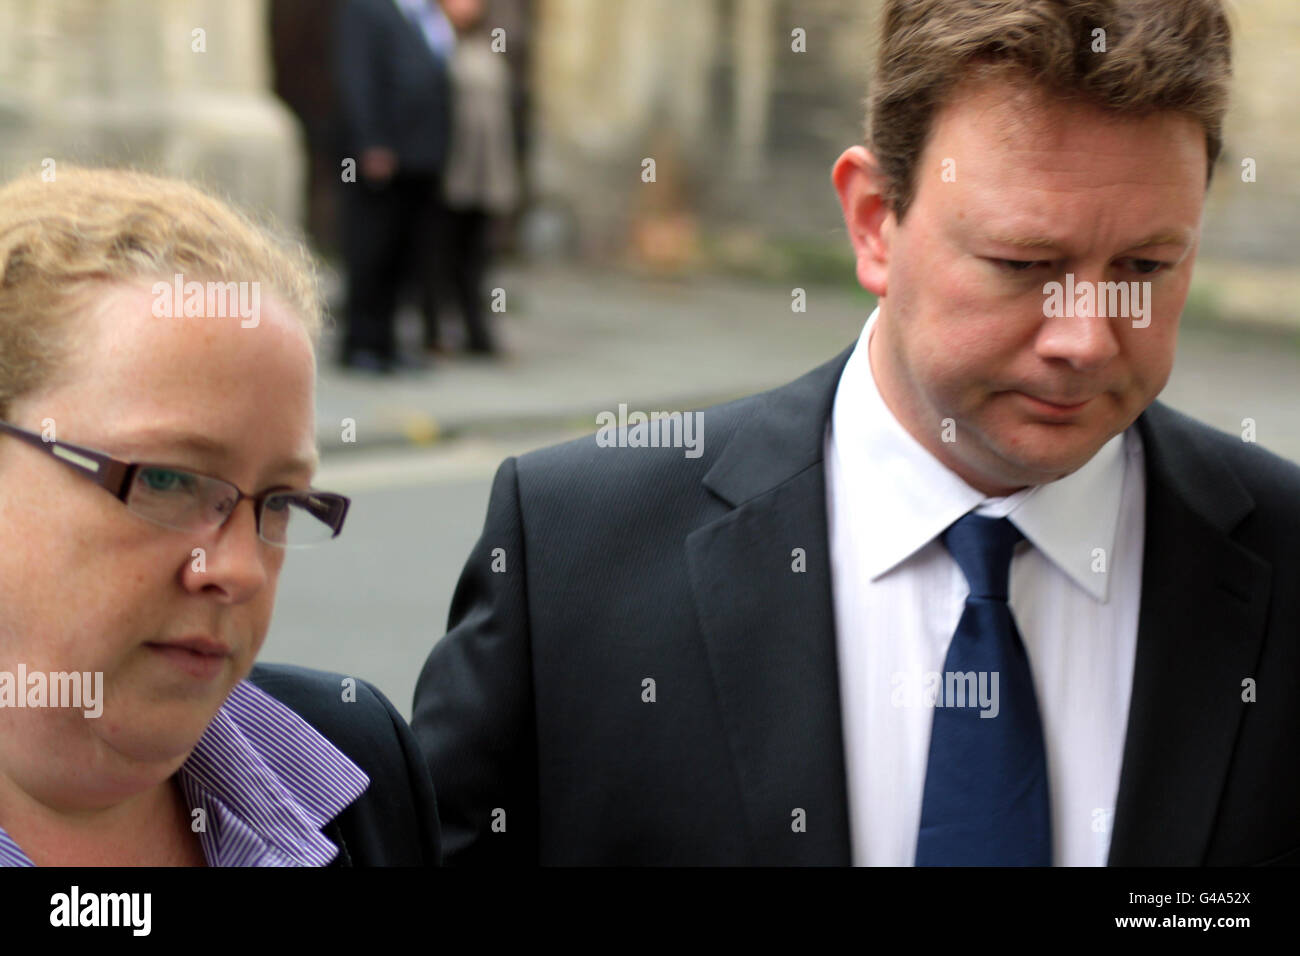 MEILLEURE QUALITÉ DISPONIBLE: Mark Bruton-Young et son épouse Clare arrivent aujourd'hui au tribunal de la Couronne de Bristol après qu'il a été acquitté du meurtre de sa fille Harriet. Banque D'Images